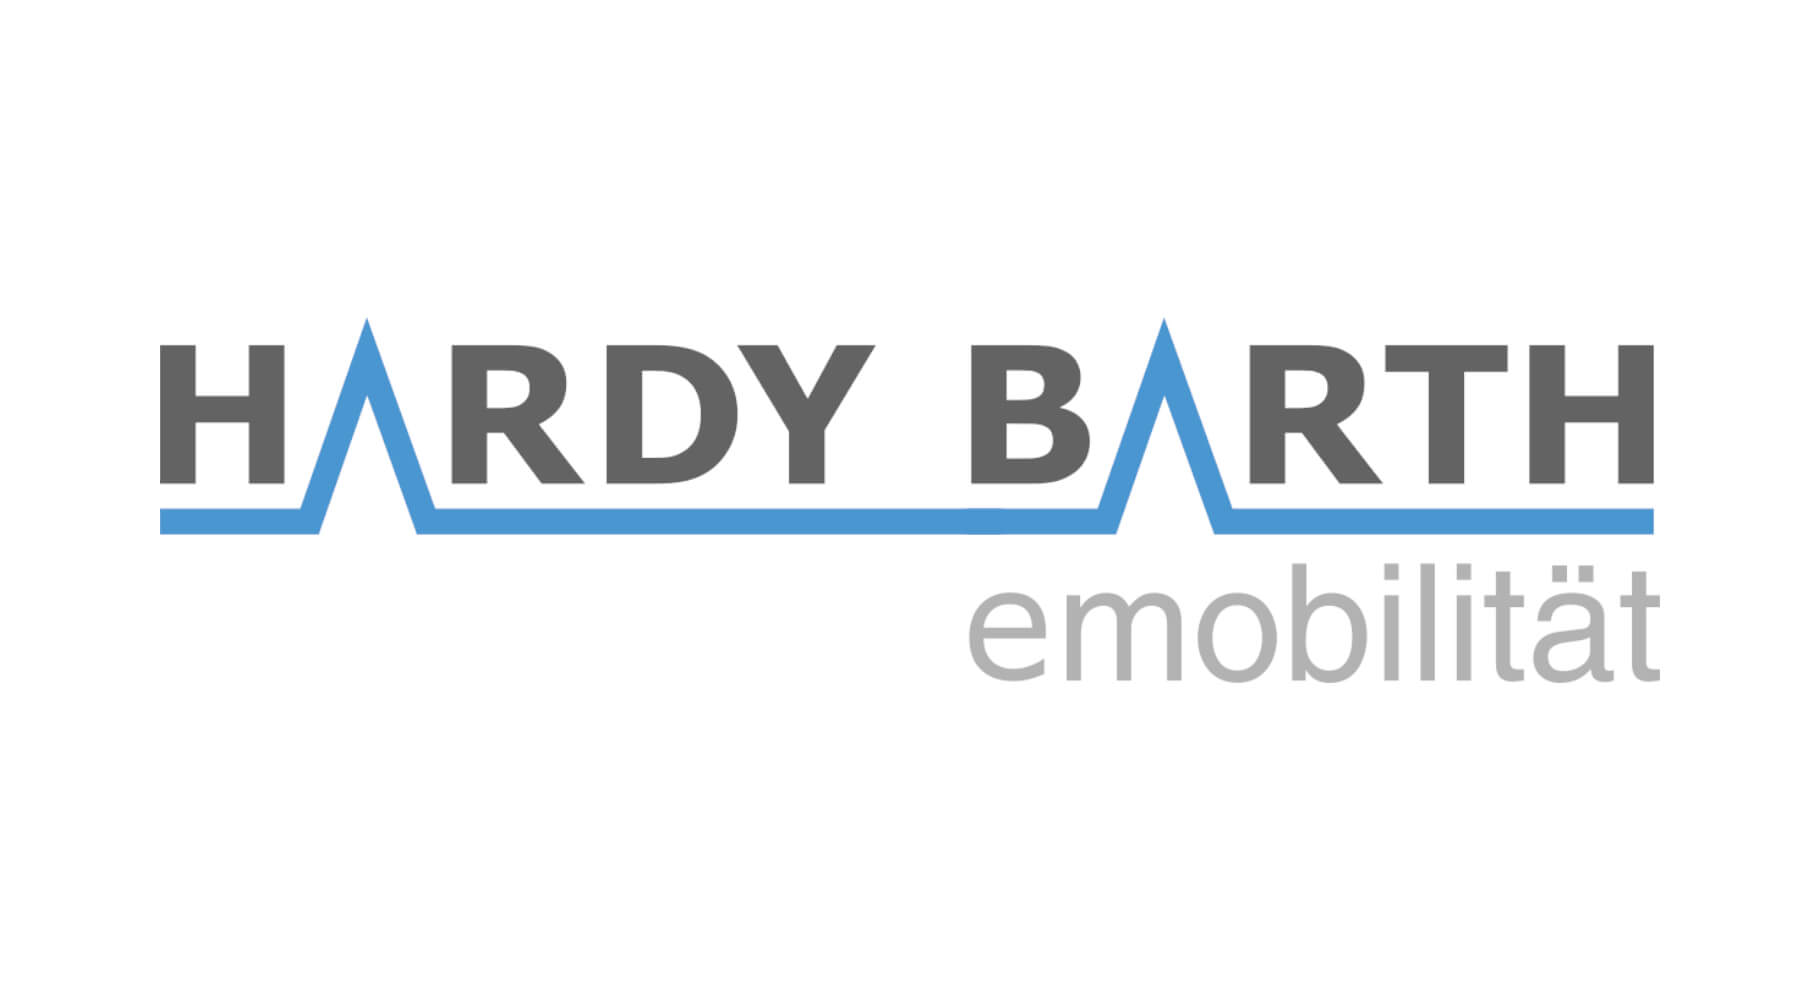 HARDY BARTH logo, schwarz, auf weißem Hintergrund